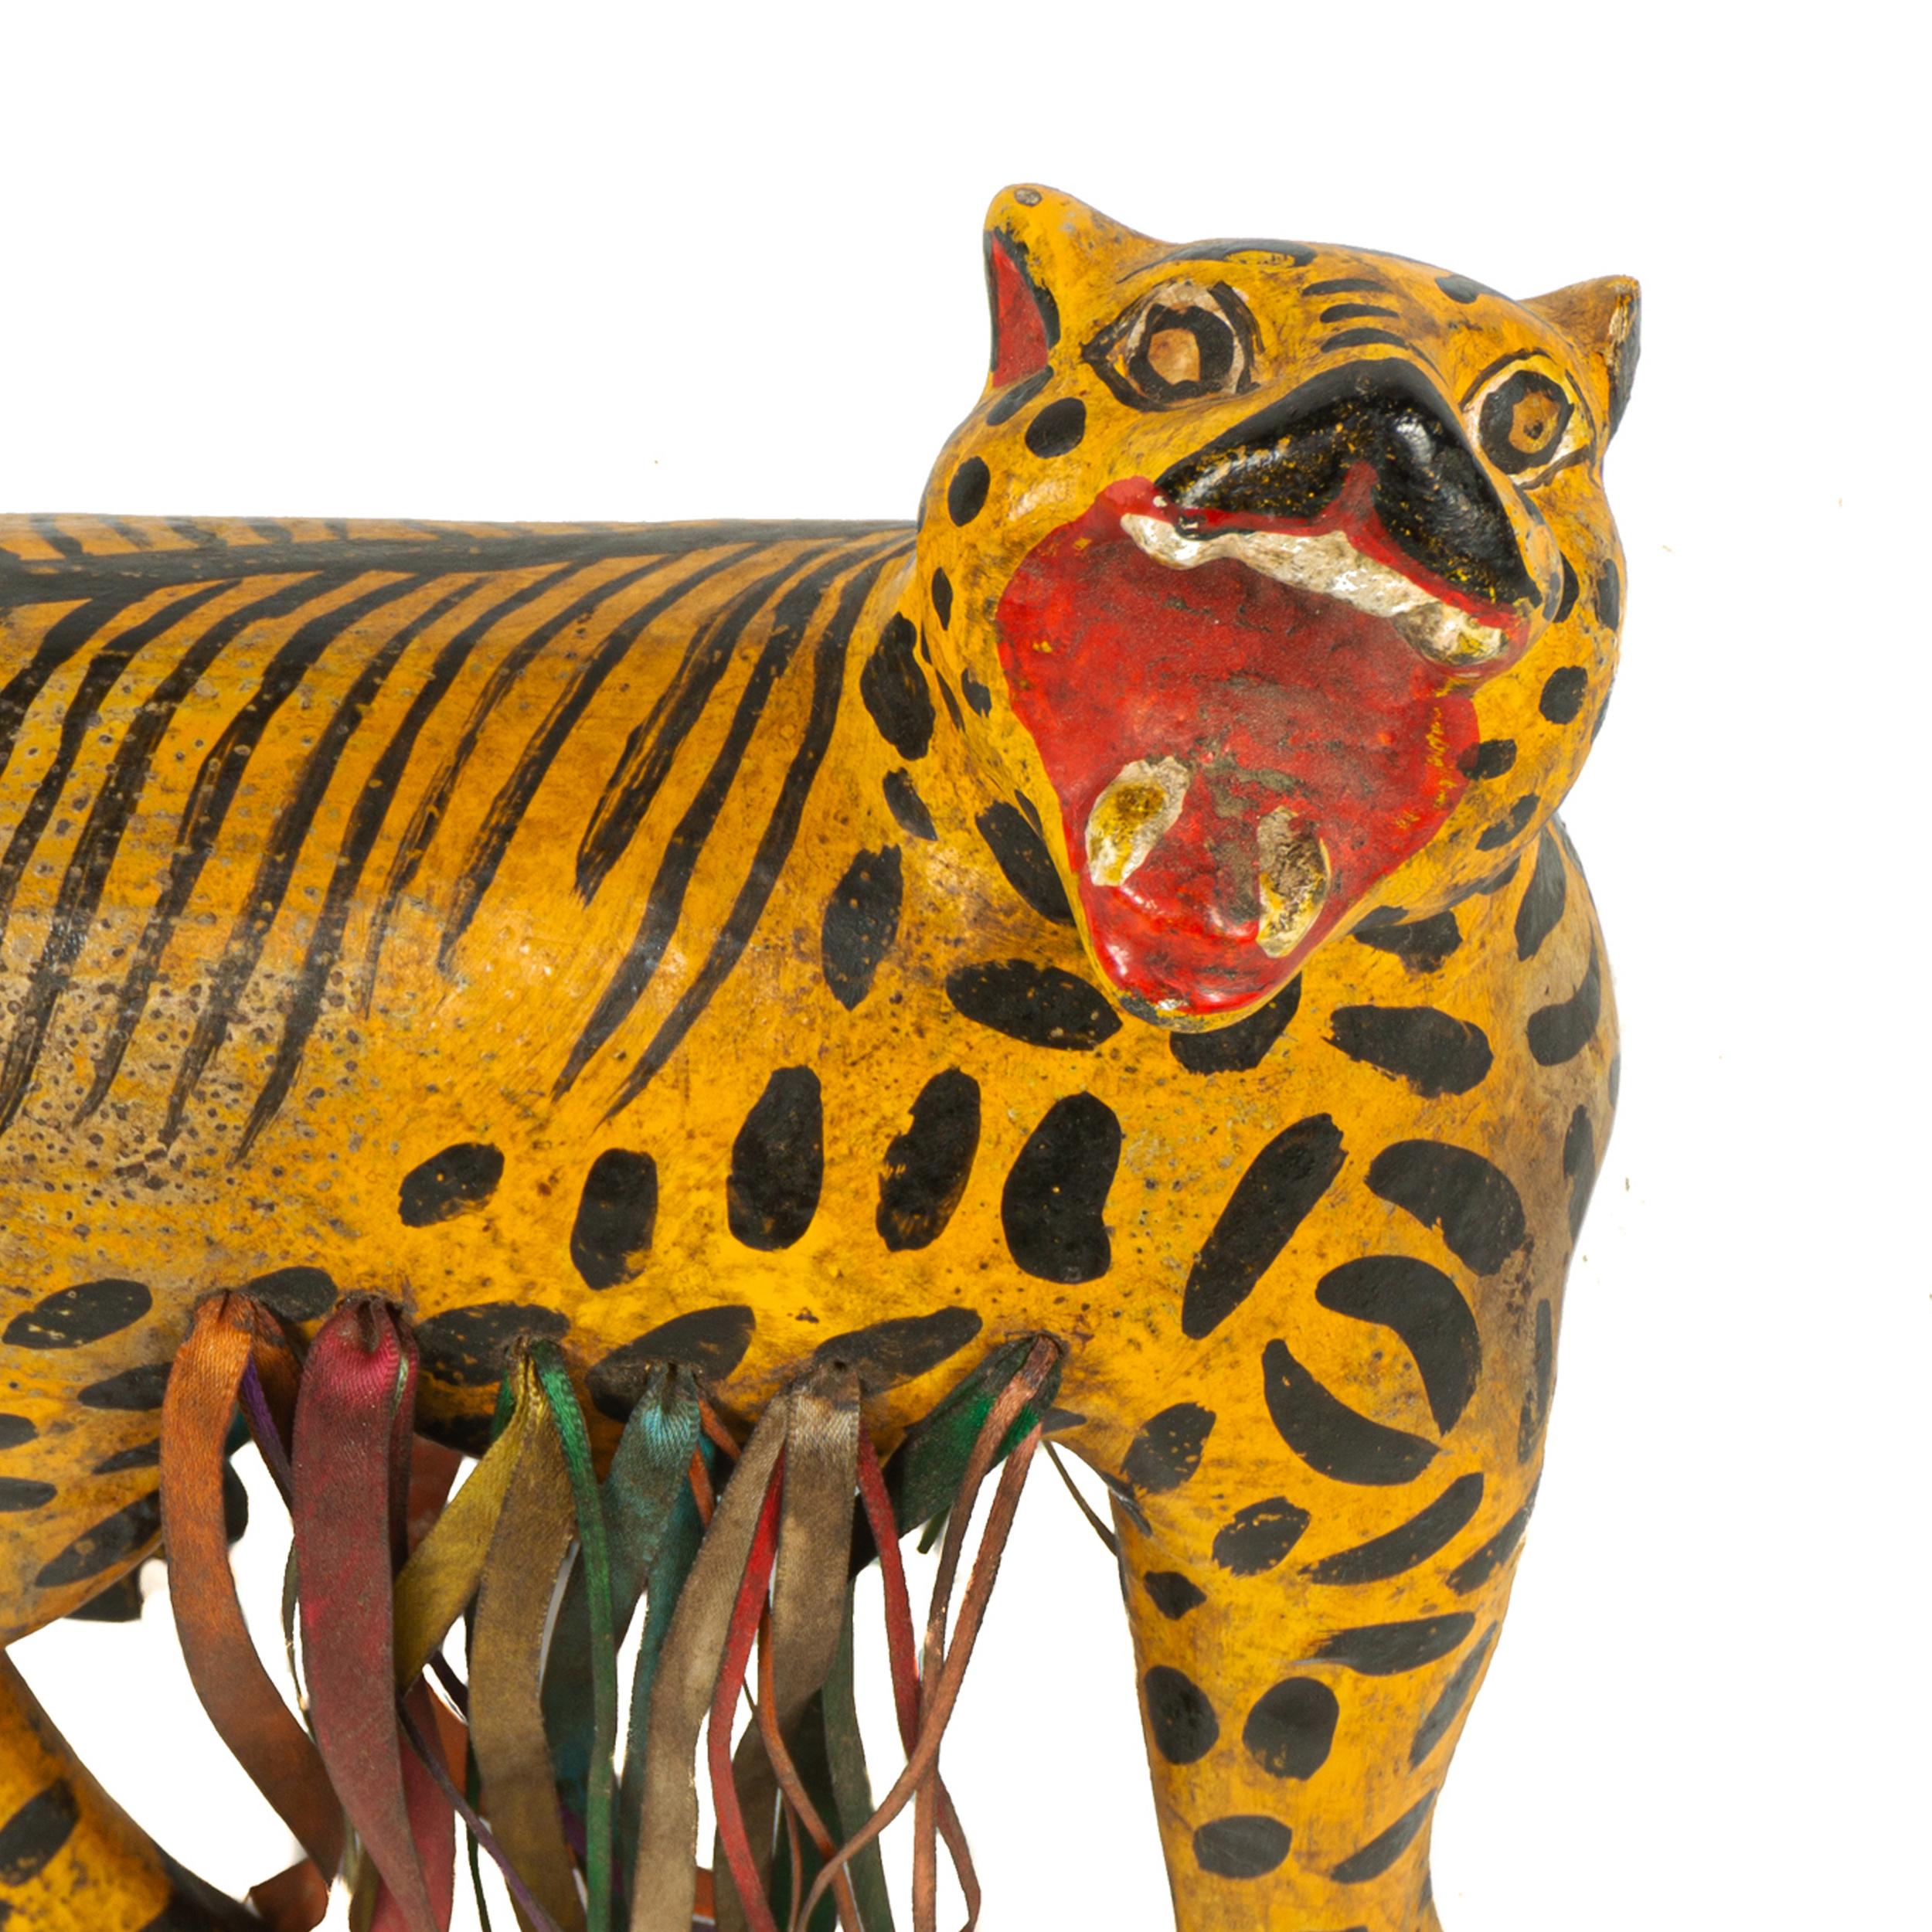 Ce tigre vintage sculpté et peint à la main, est vraisemblablement fabriqué à Chilapa, Guerrero, vers 1940, dans un style d'art populaire. La sculpture a été réalisée dans un style naïf et a été peinte à la main avec des détails.

Un exemple très